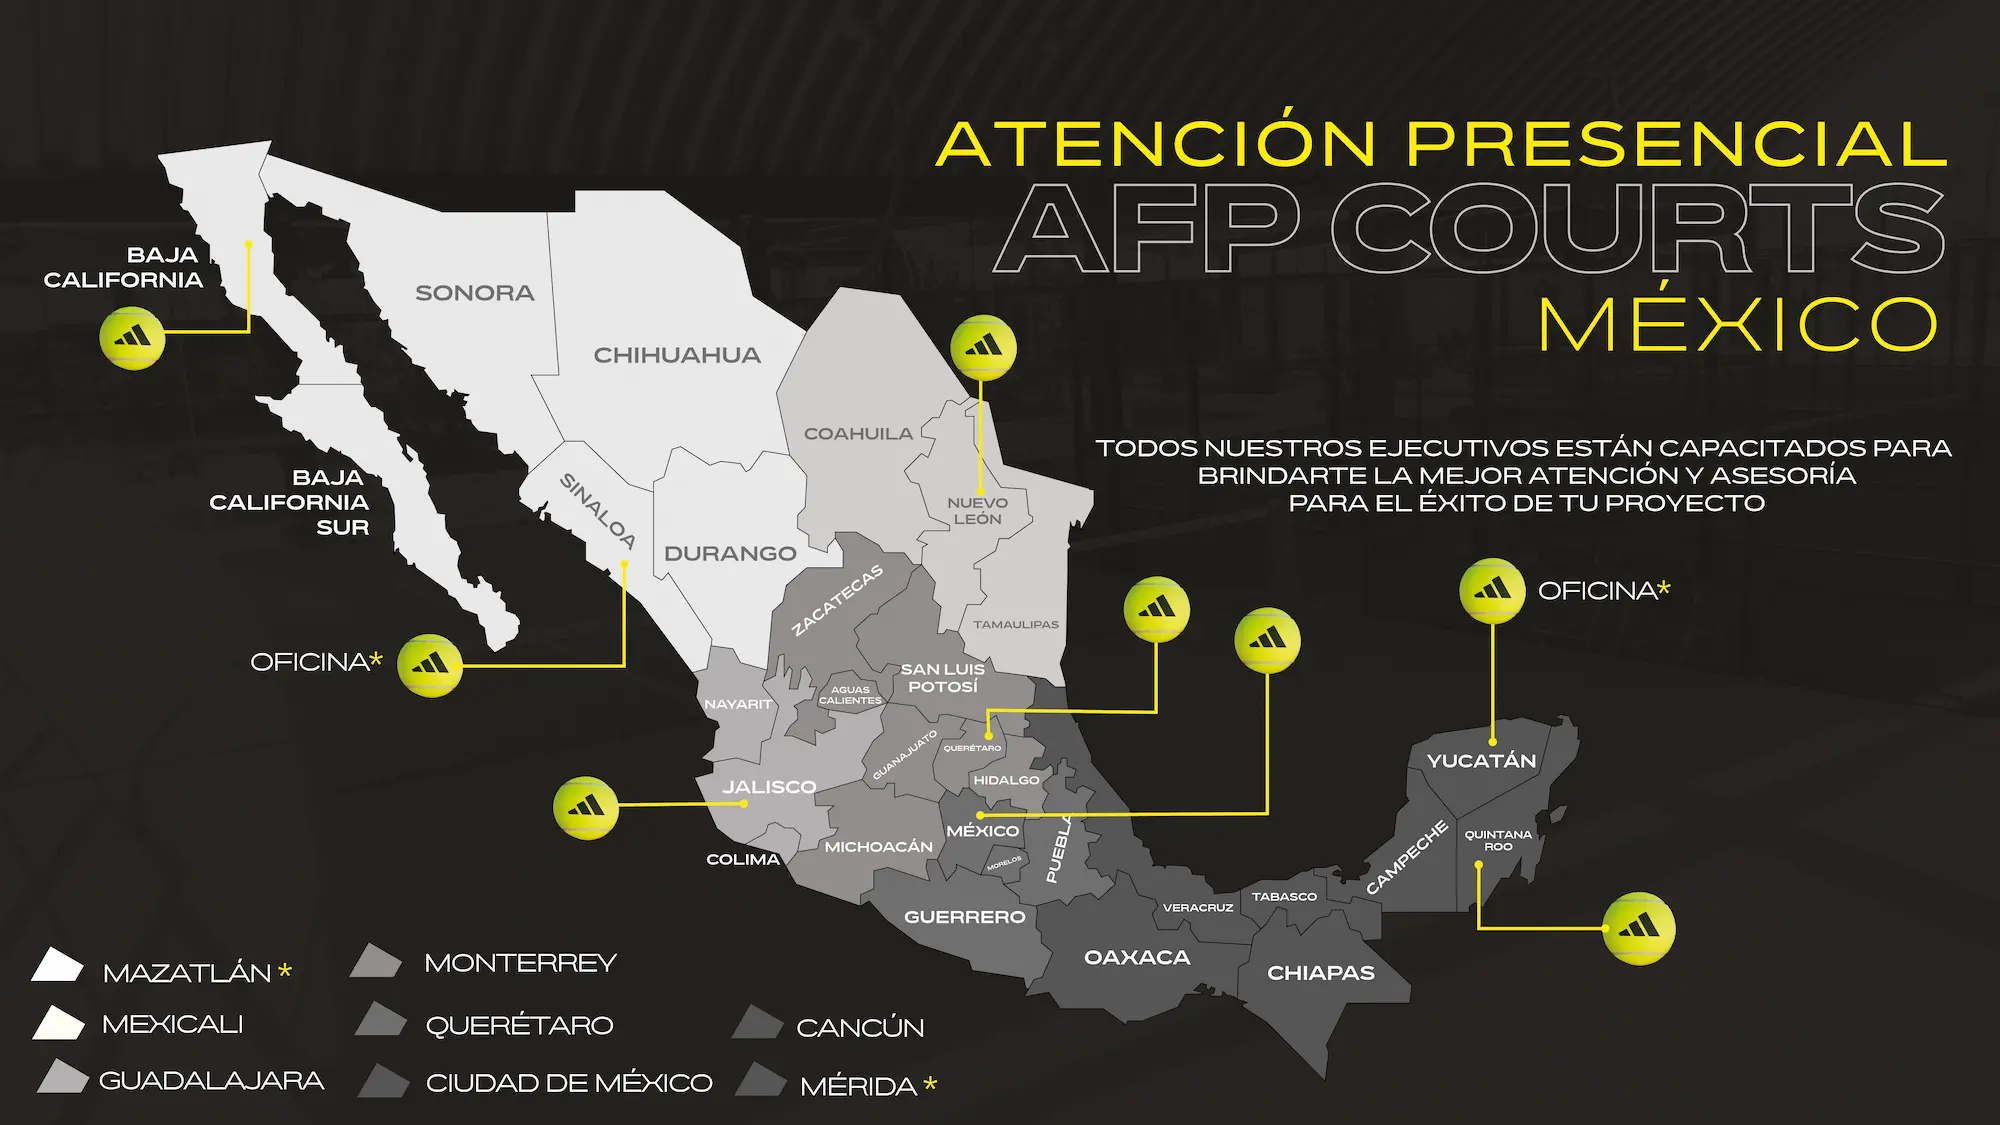 Mapa atención presencial AFP courts México. REDSPORT y ADIDAS. Canchas de padel en México, pádel redsport adidas merida, pádel mexicali